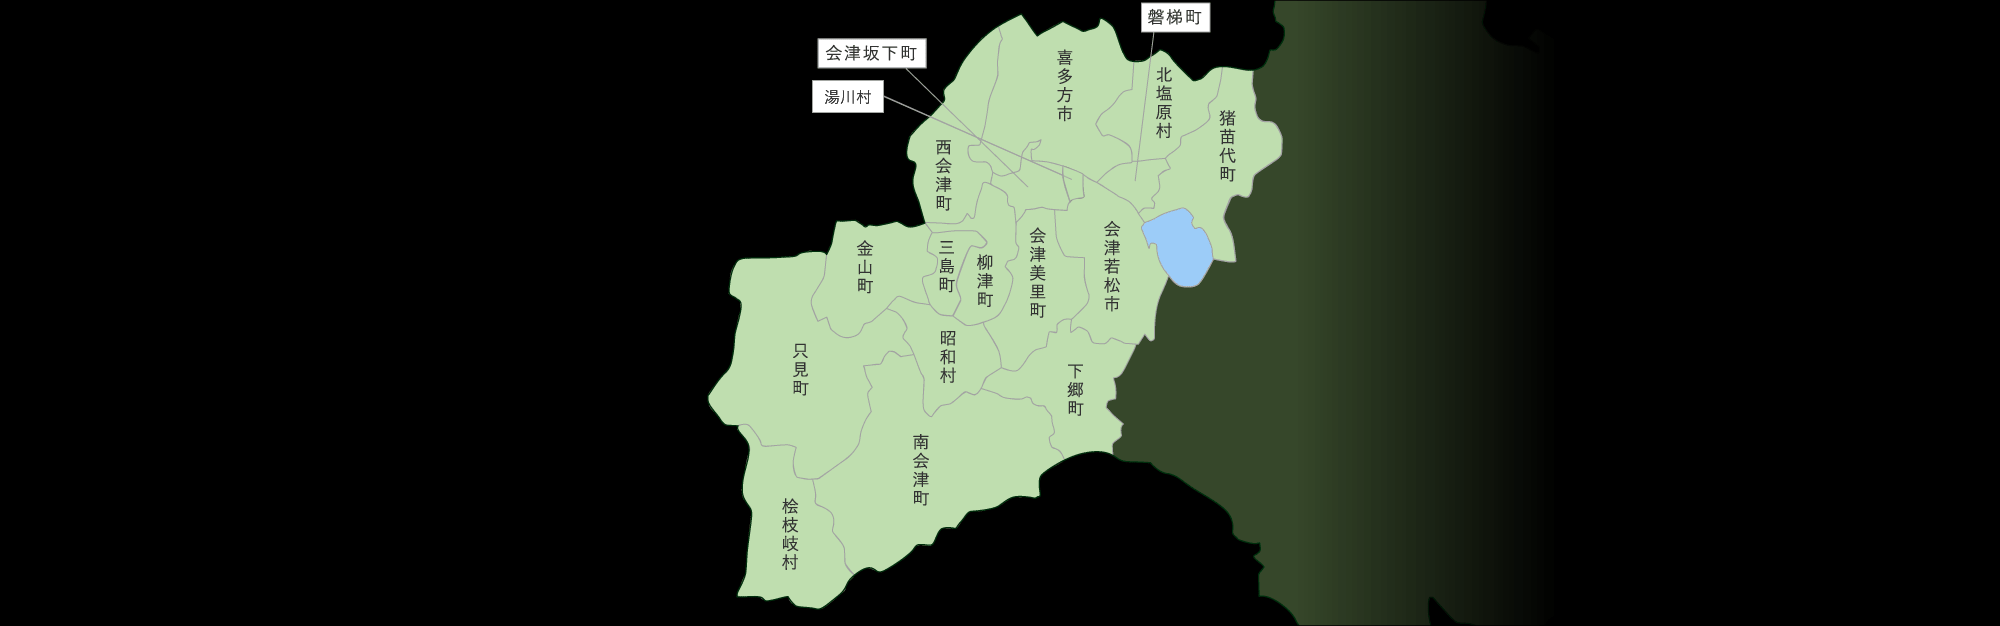 会津地方マップ